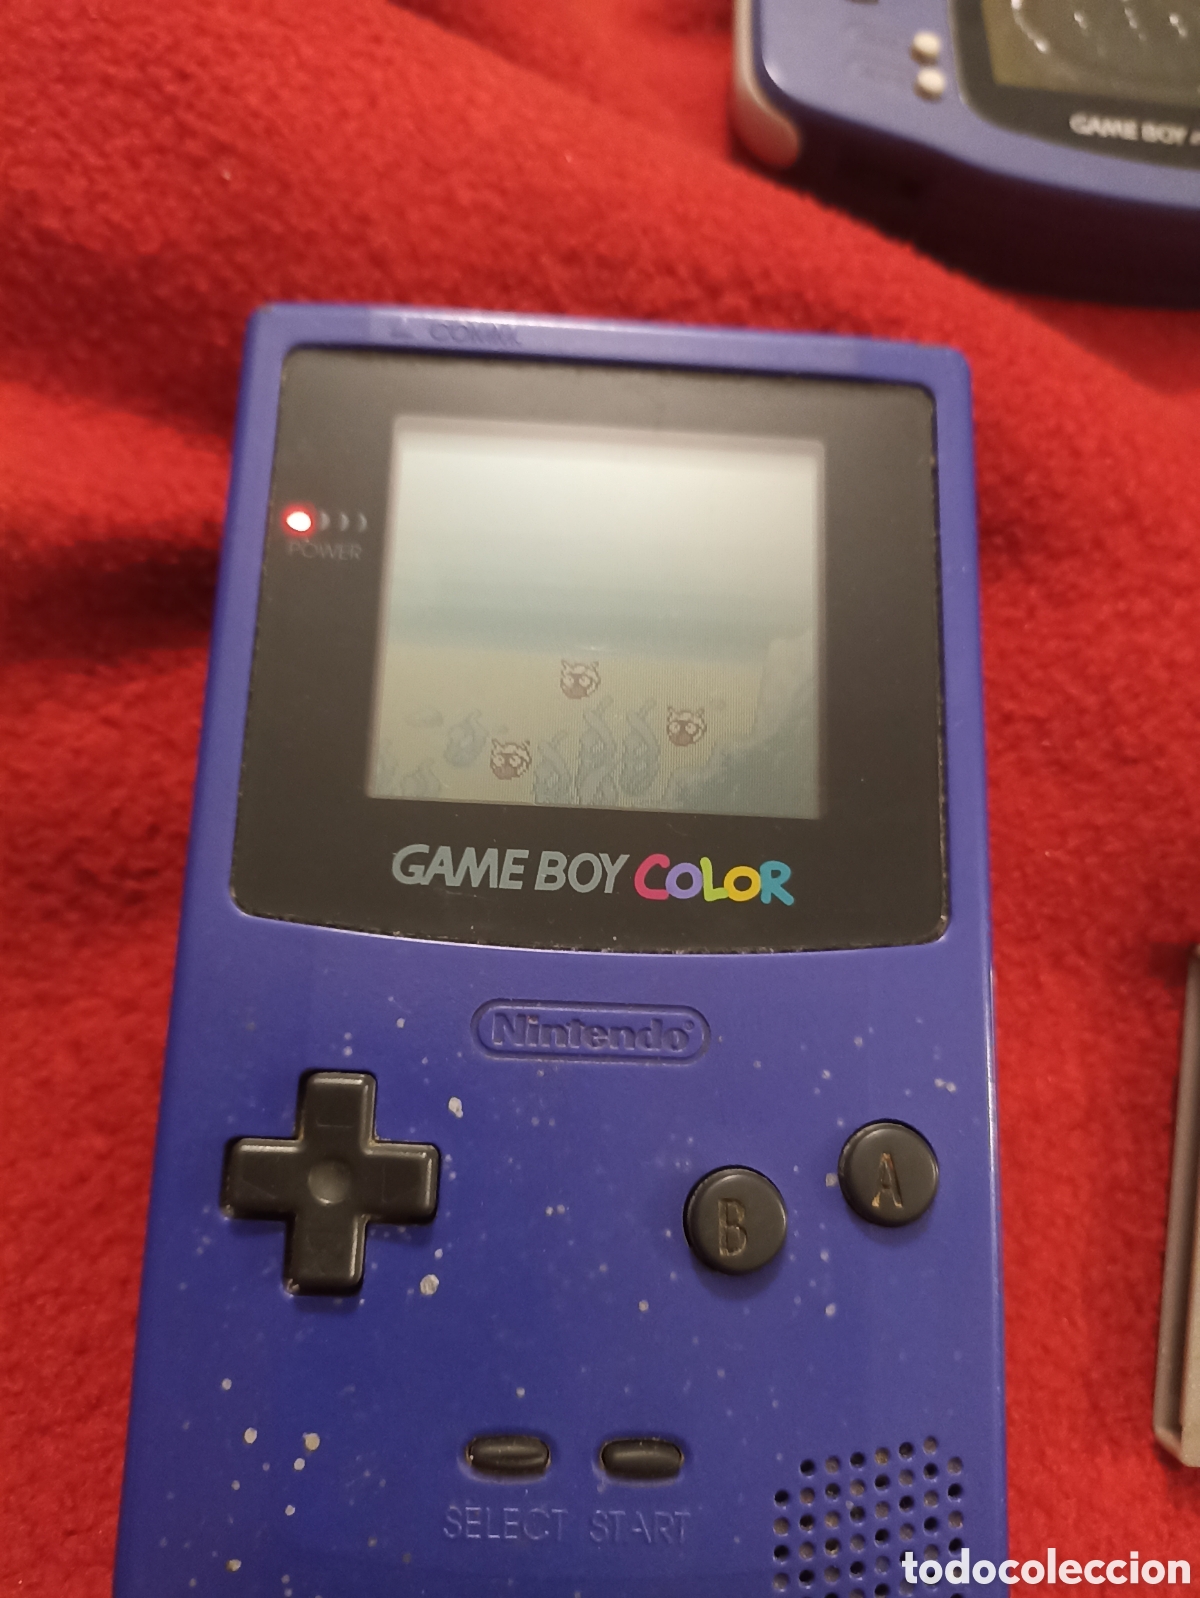 consola game boy color mas juego - Acheter Jeux vidéo et consoles Game Boy  Color sur todocoleccion